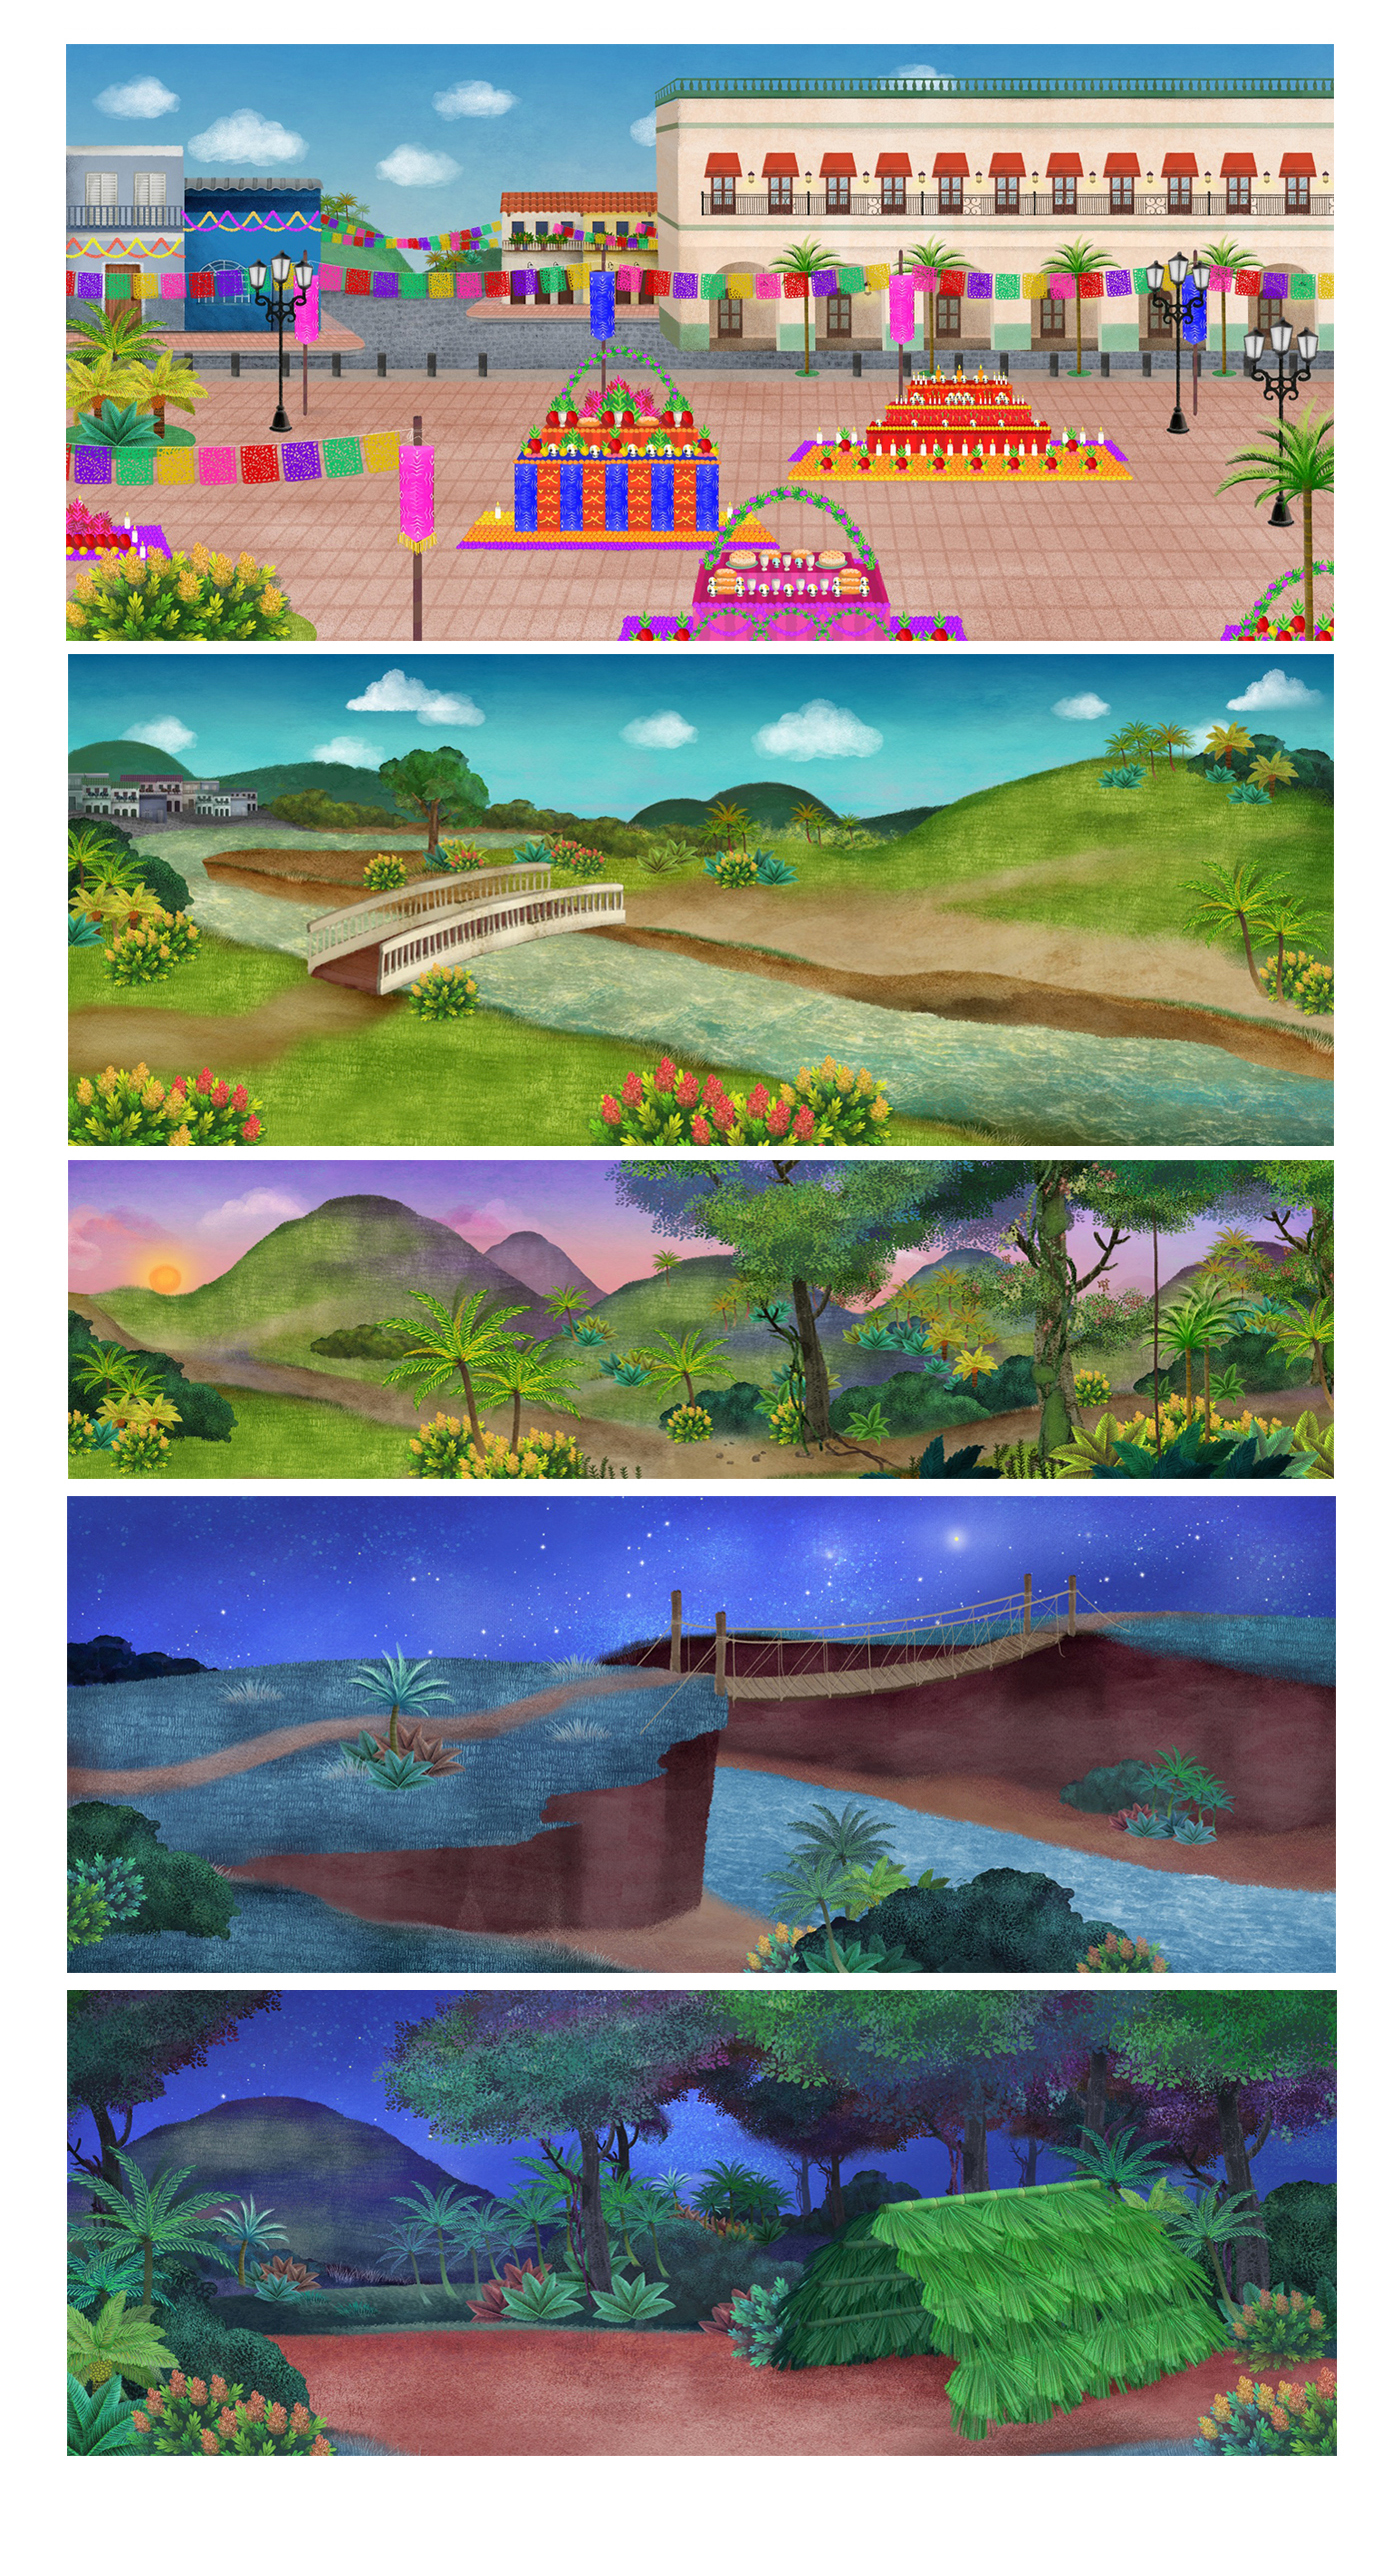 Paka Paka la vuelta en cuento characters children illustration cartoon ilustration ilustración para niños acuarela vegetación paisajes dibujos animados creativo watercolor